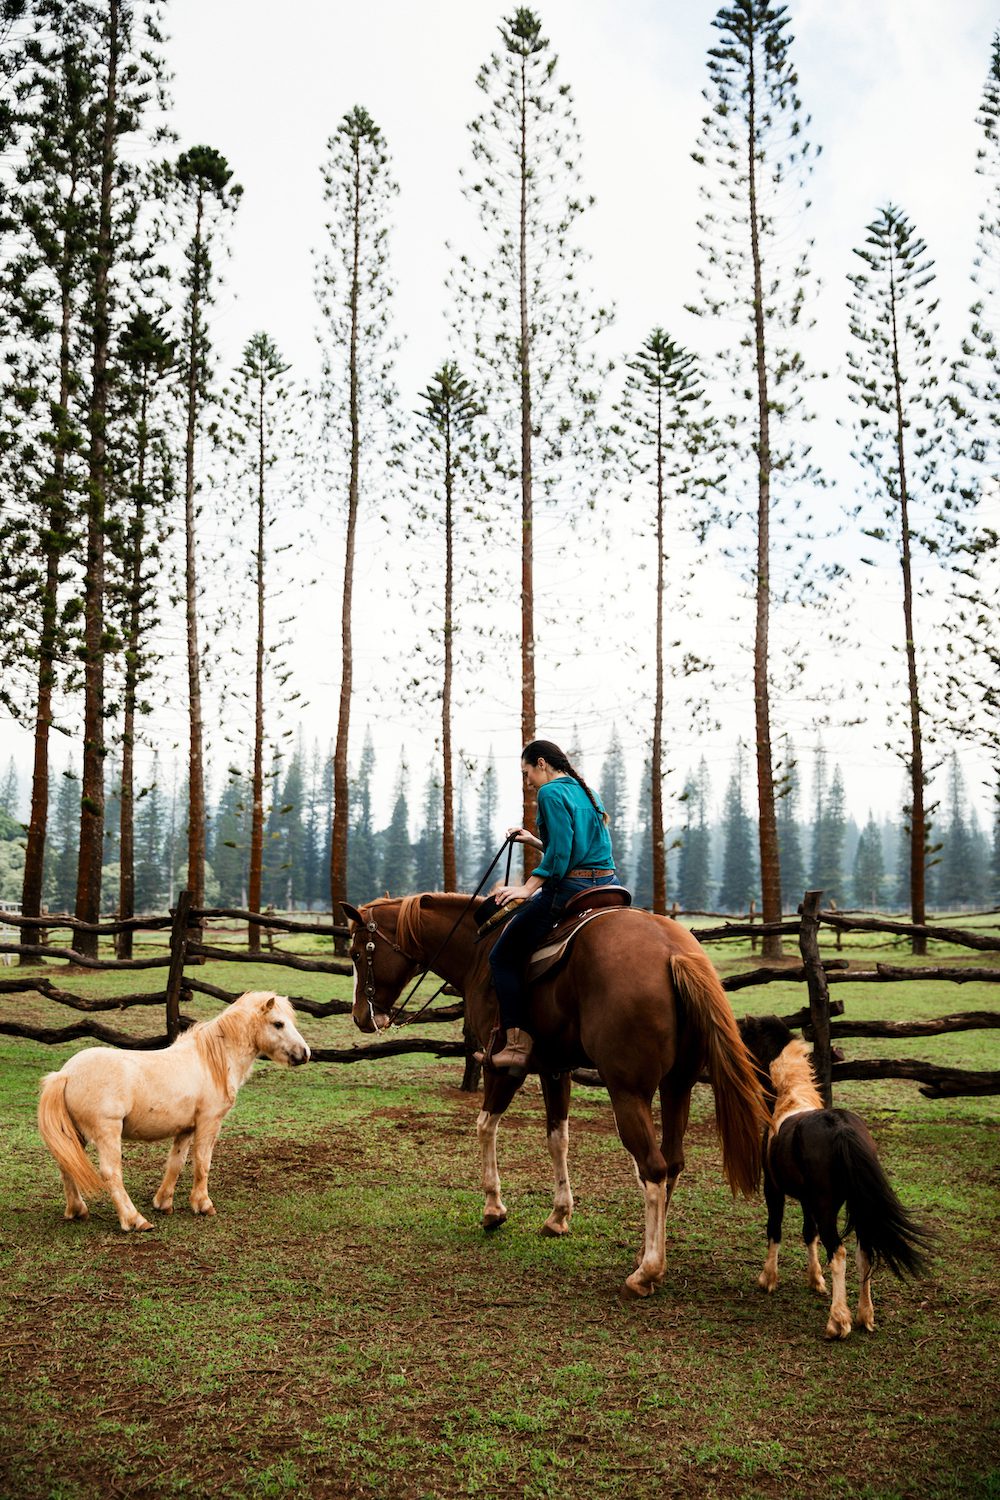 Explore Lanai on horseback